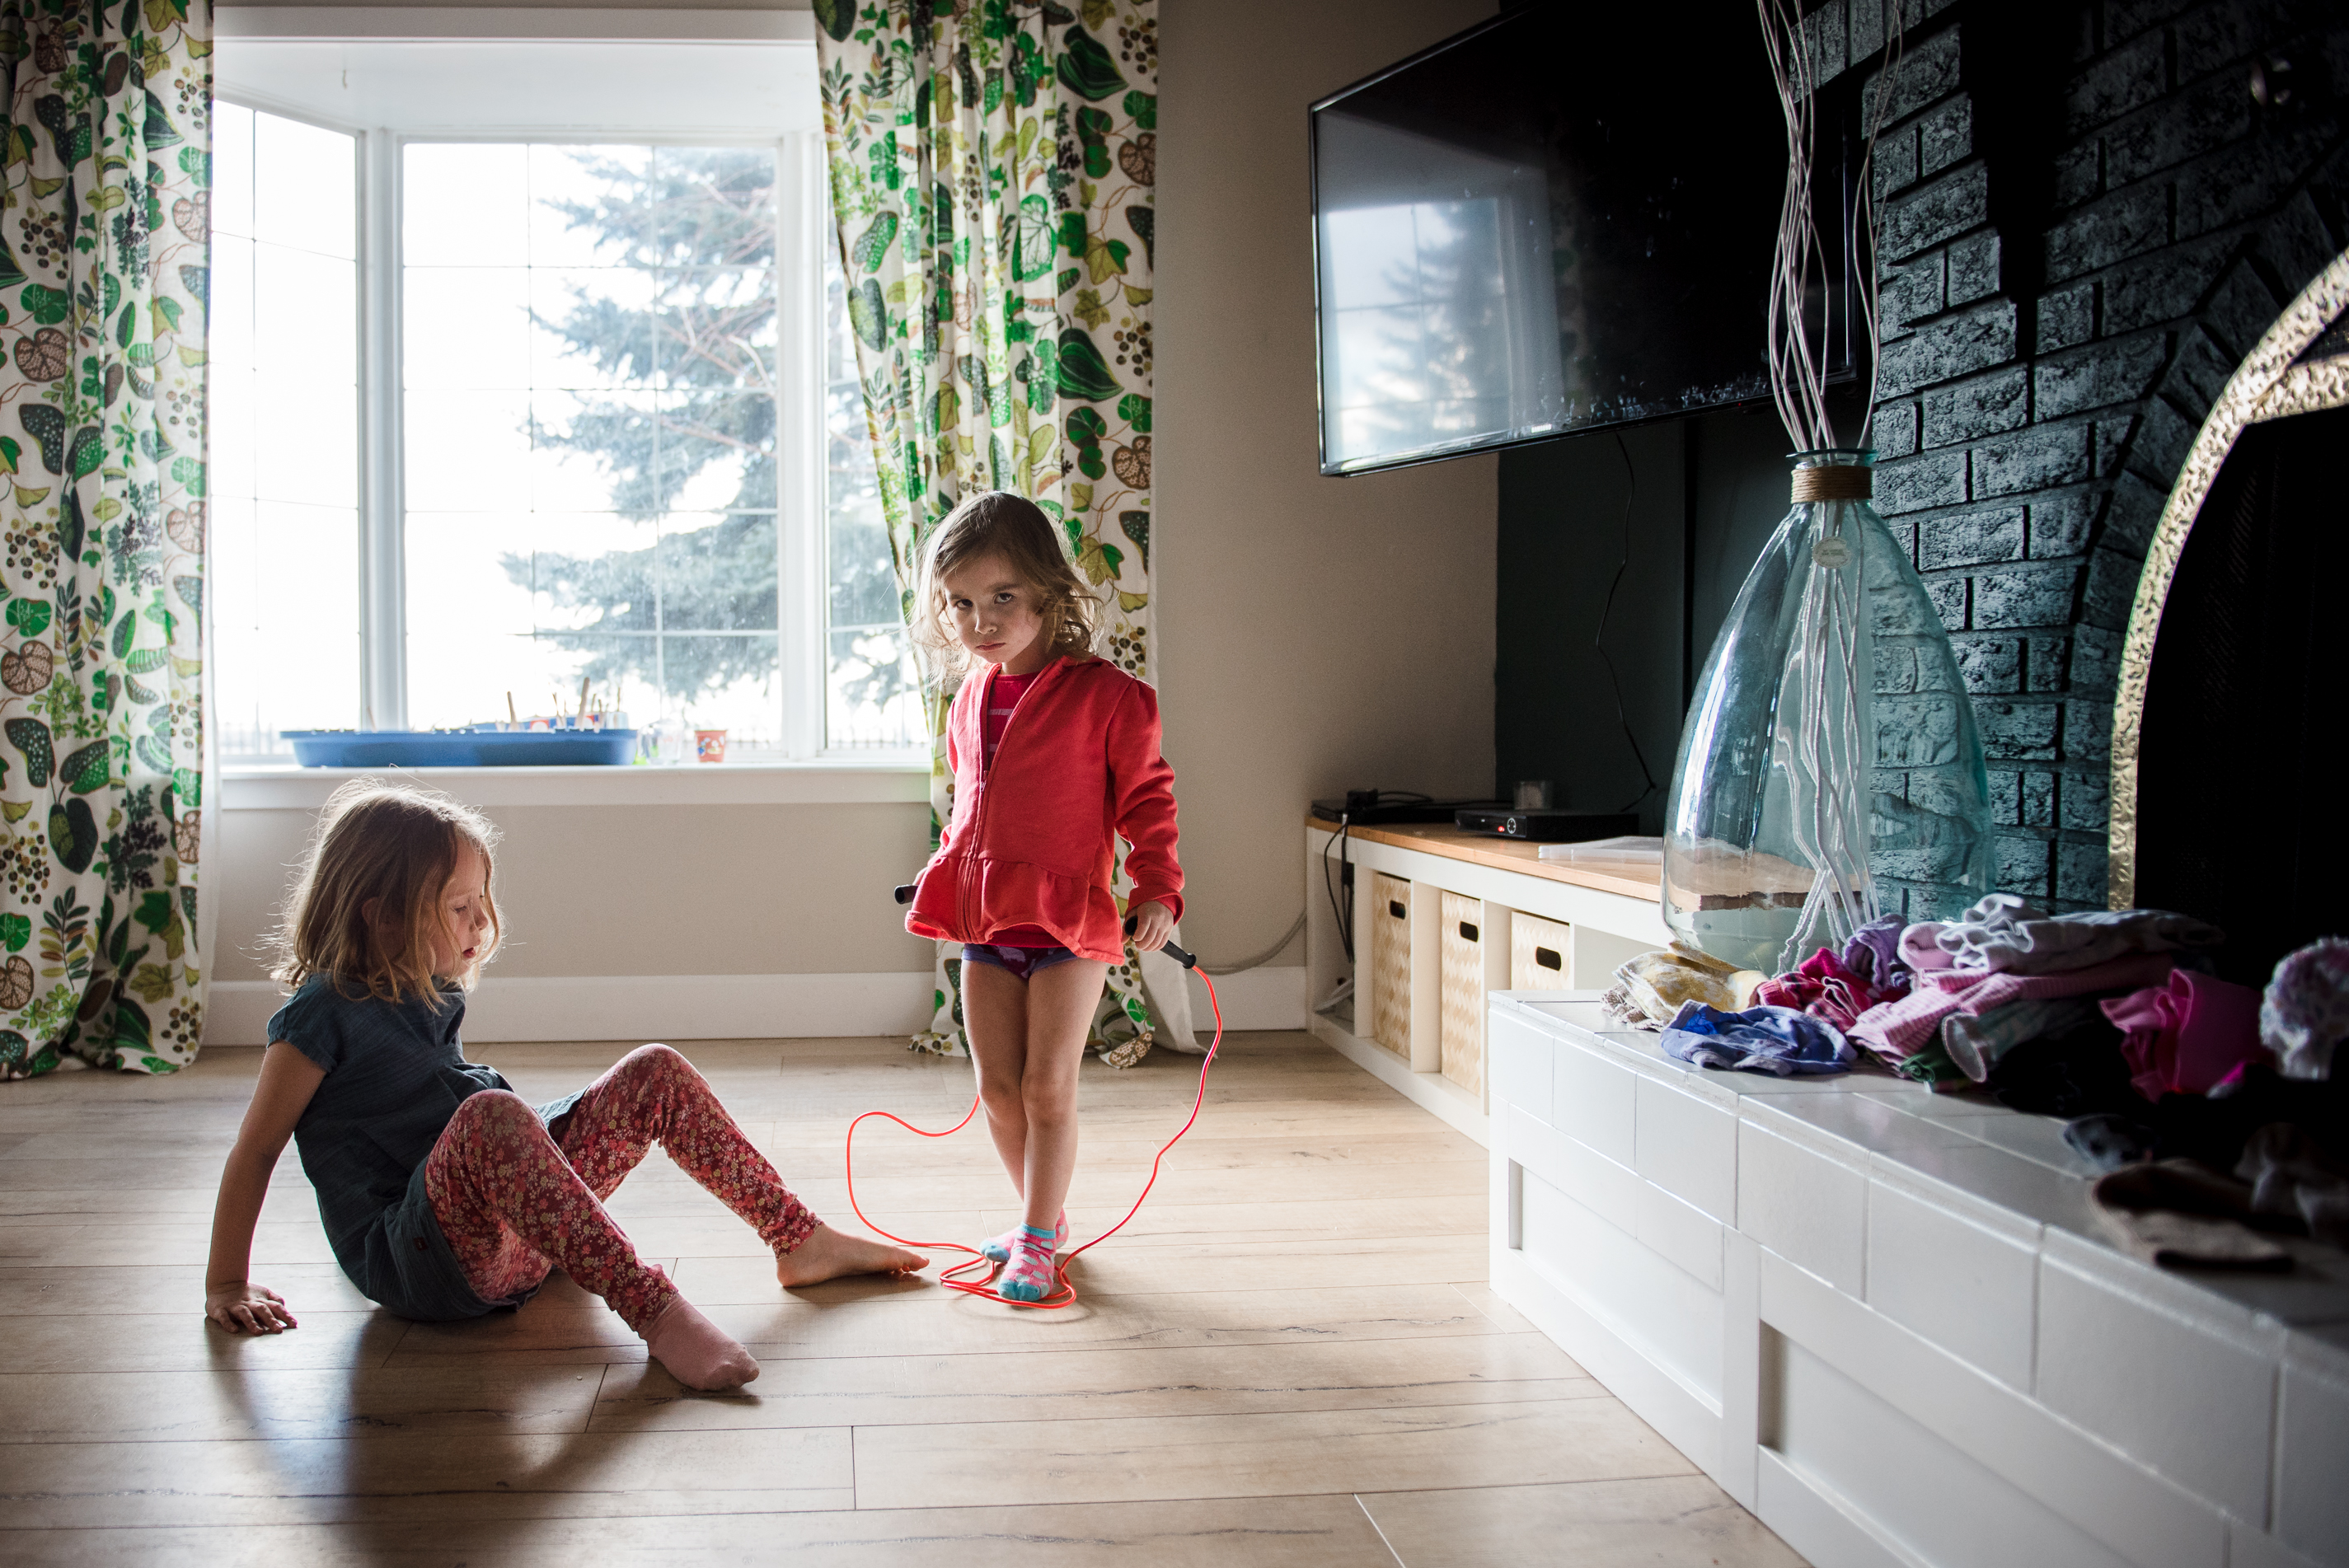 A little girl learns to skip. Documentary photographer Edmonton